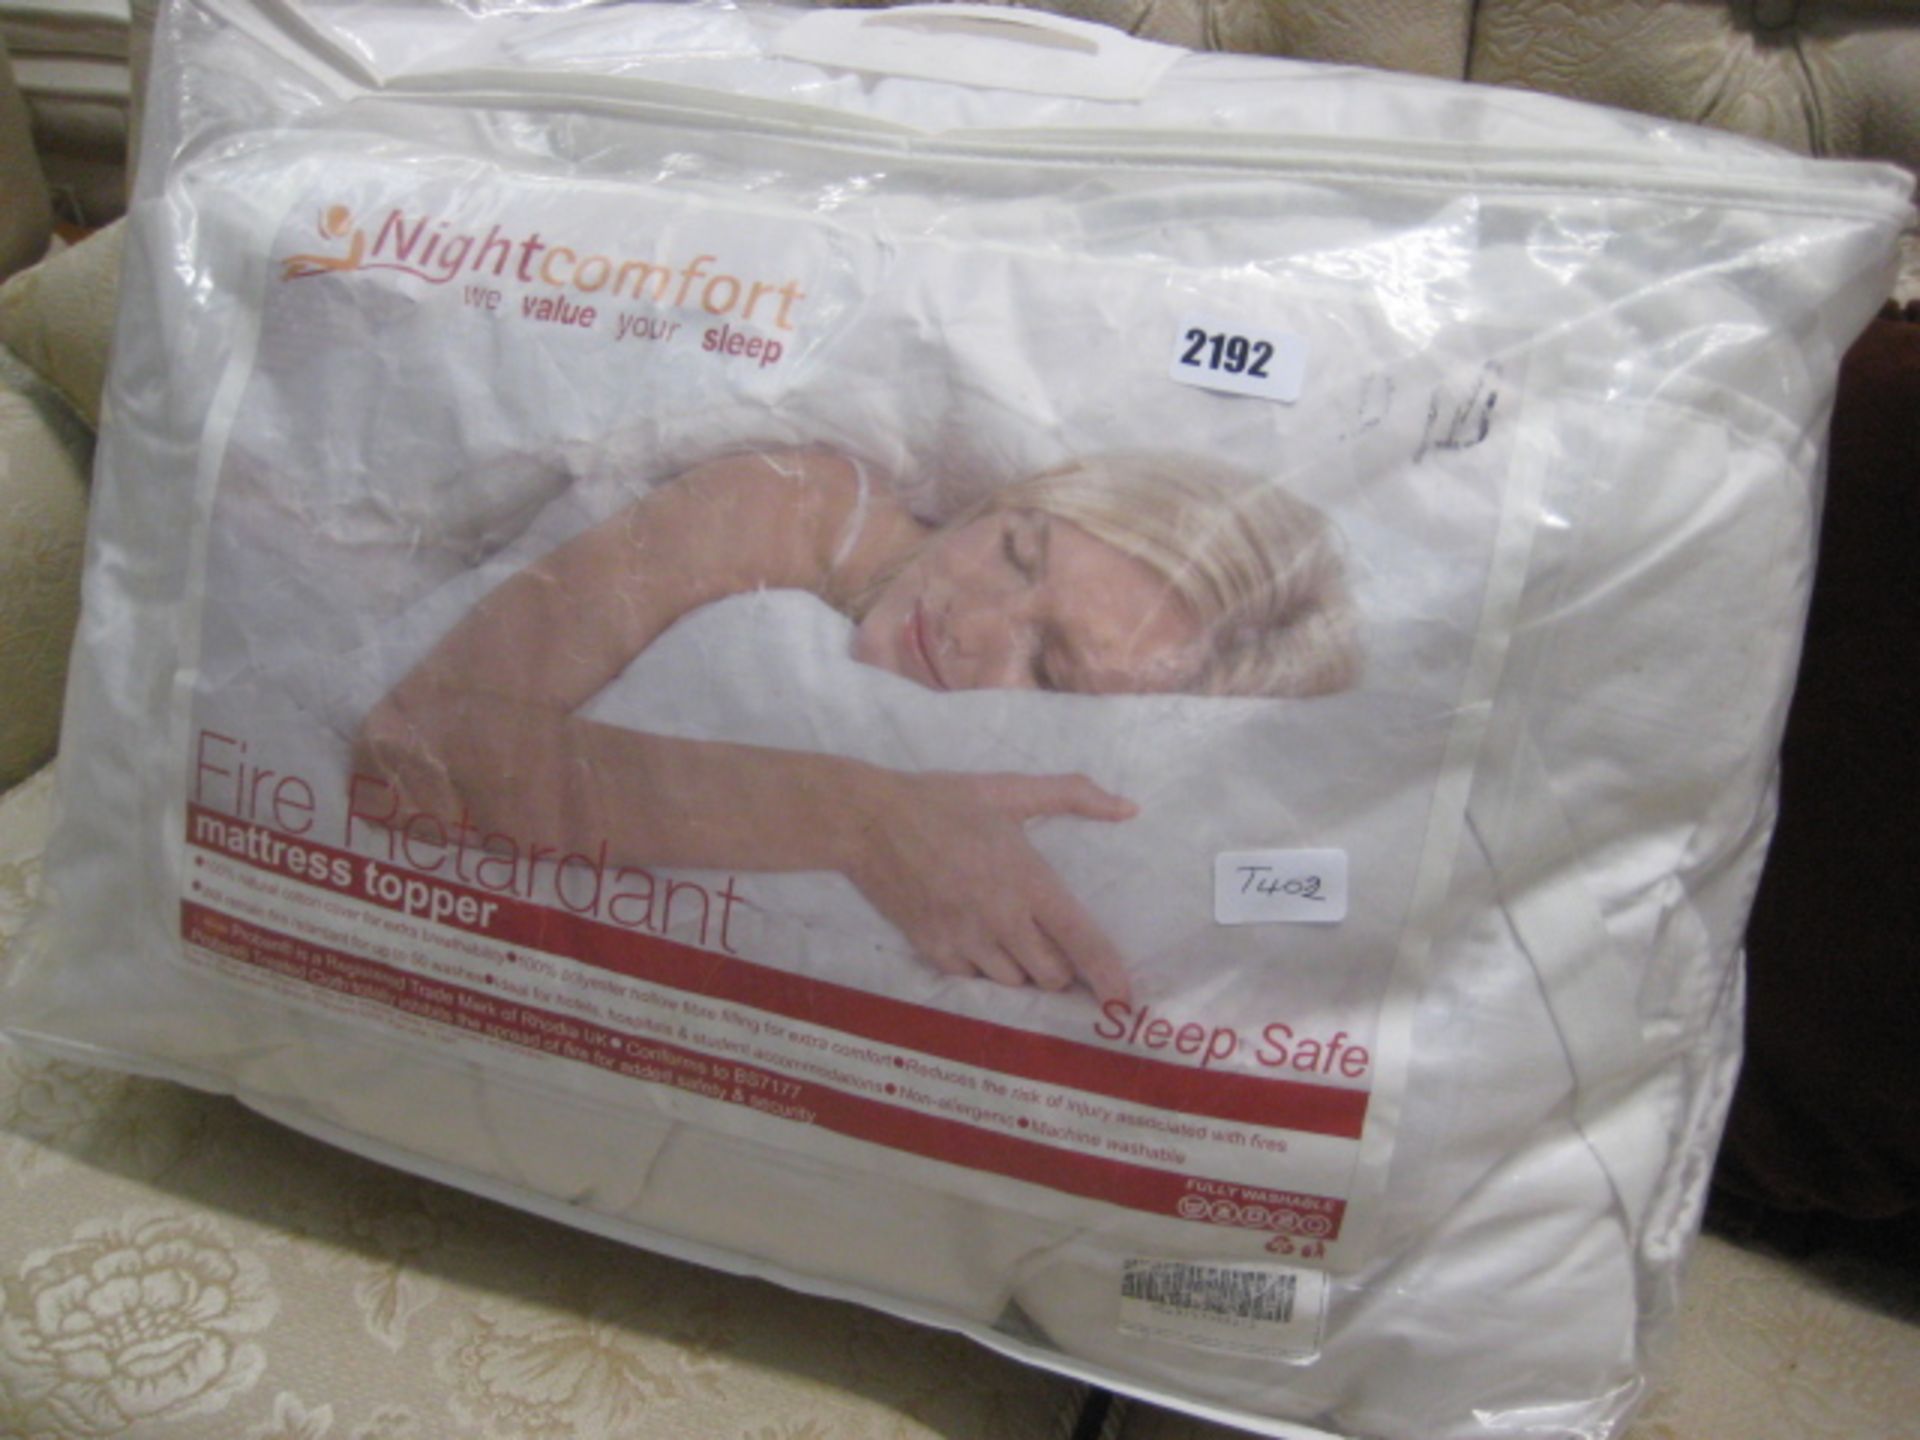 Night Comfort mattress topper